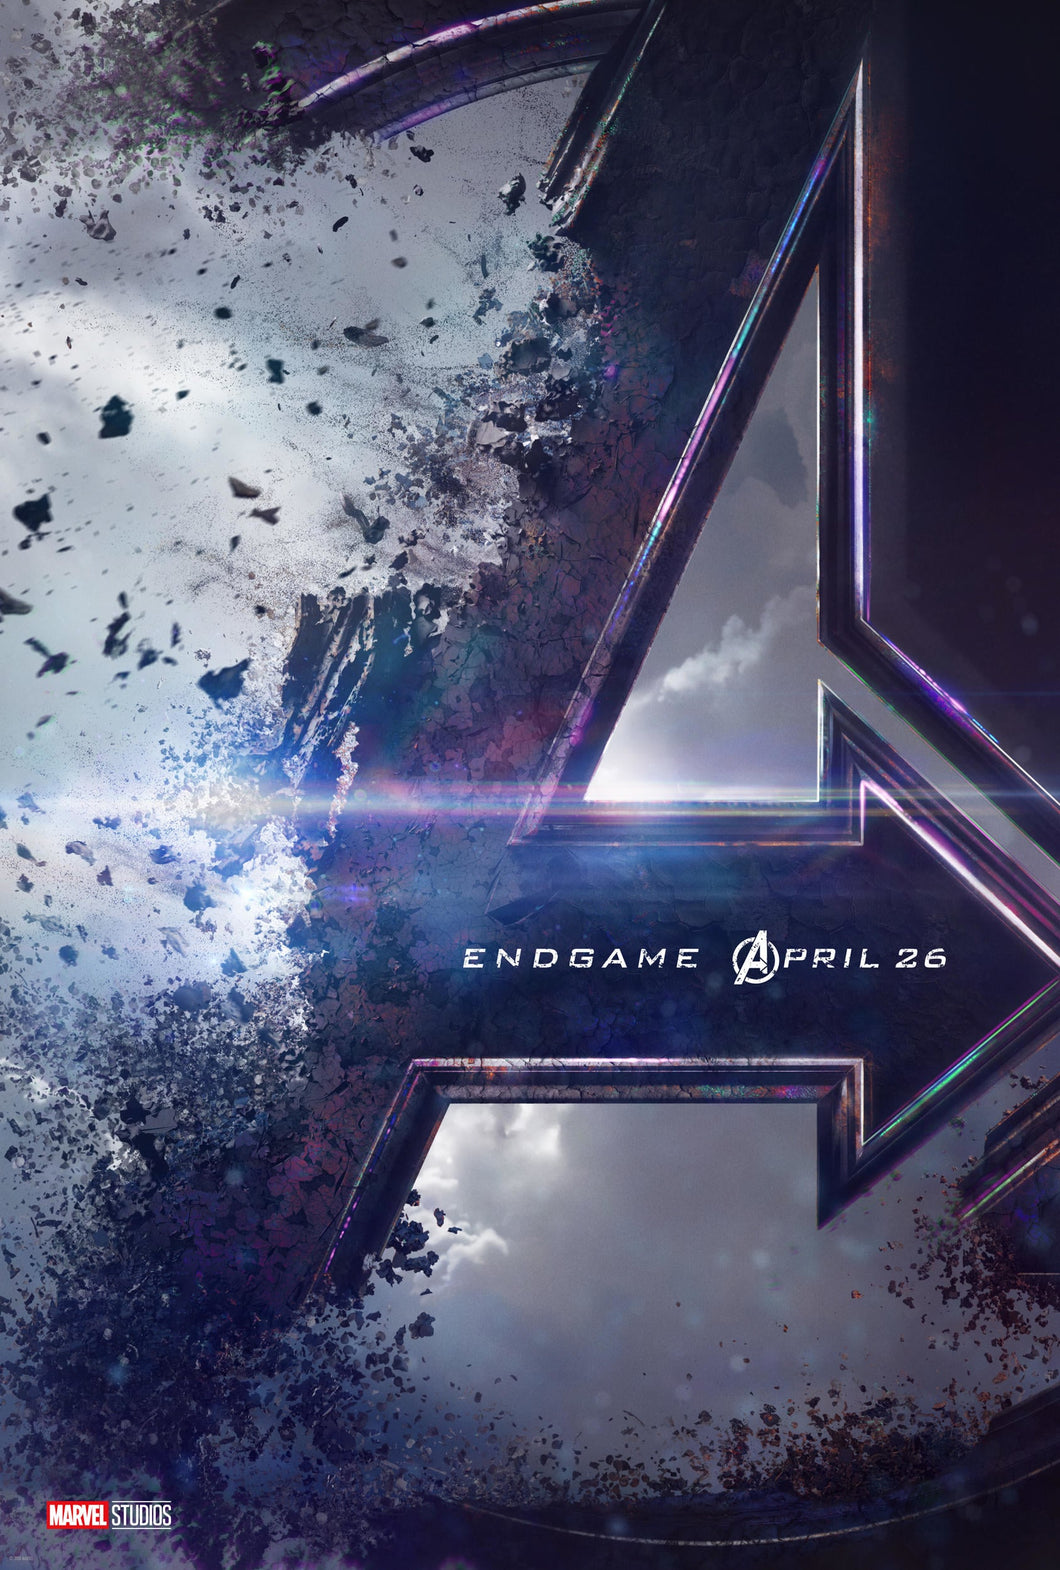 Avengers Endgame Marvel Comics Poster Framed or Unframed Glossy Poster Free UK Shipping!!!